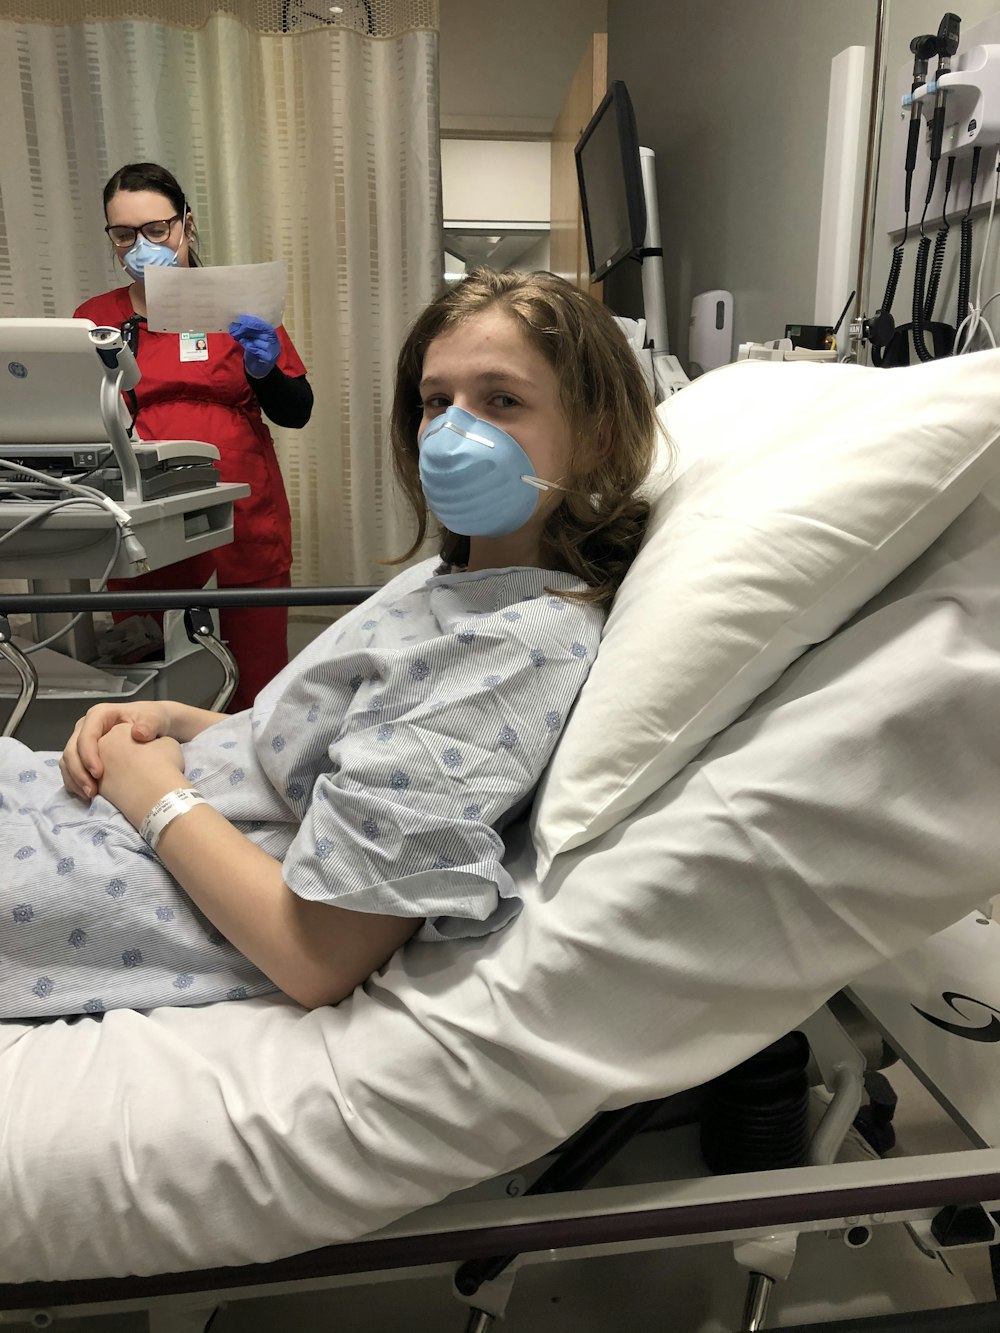 Woman lying on hospital bed photo – Free Illness Image on Unsplash